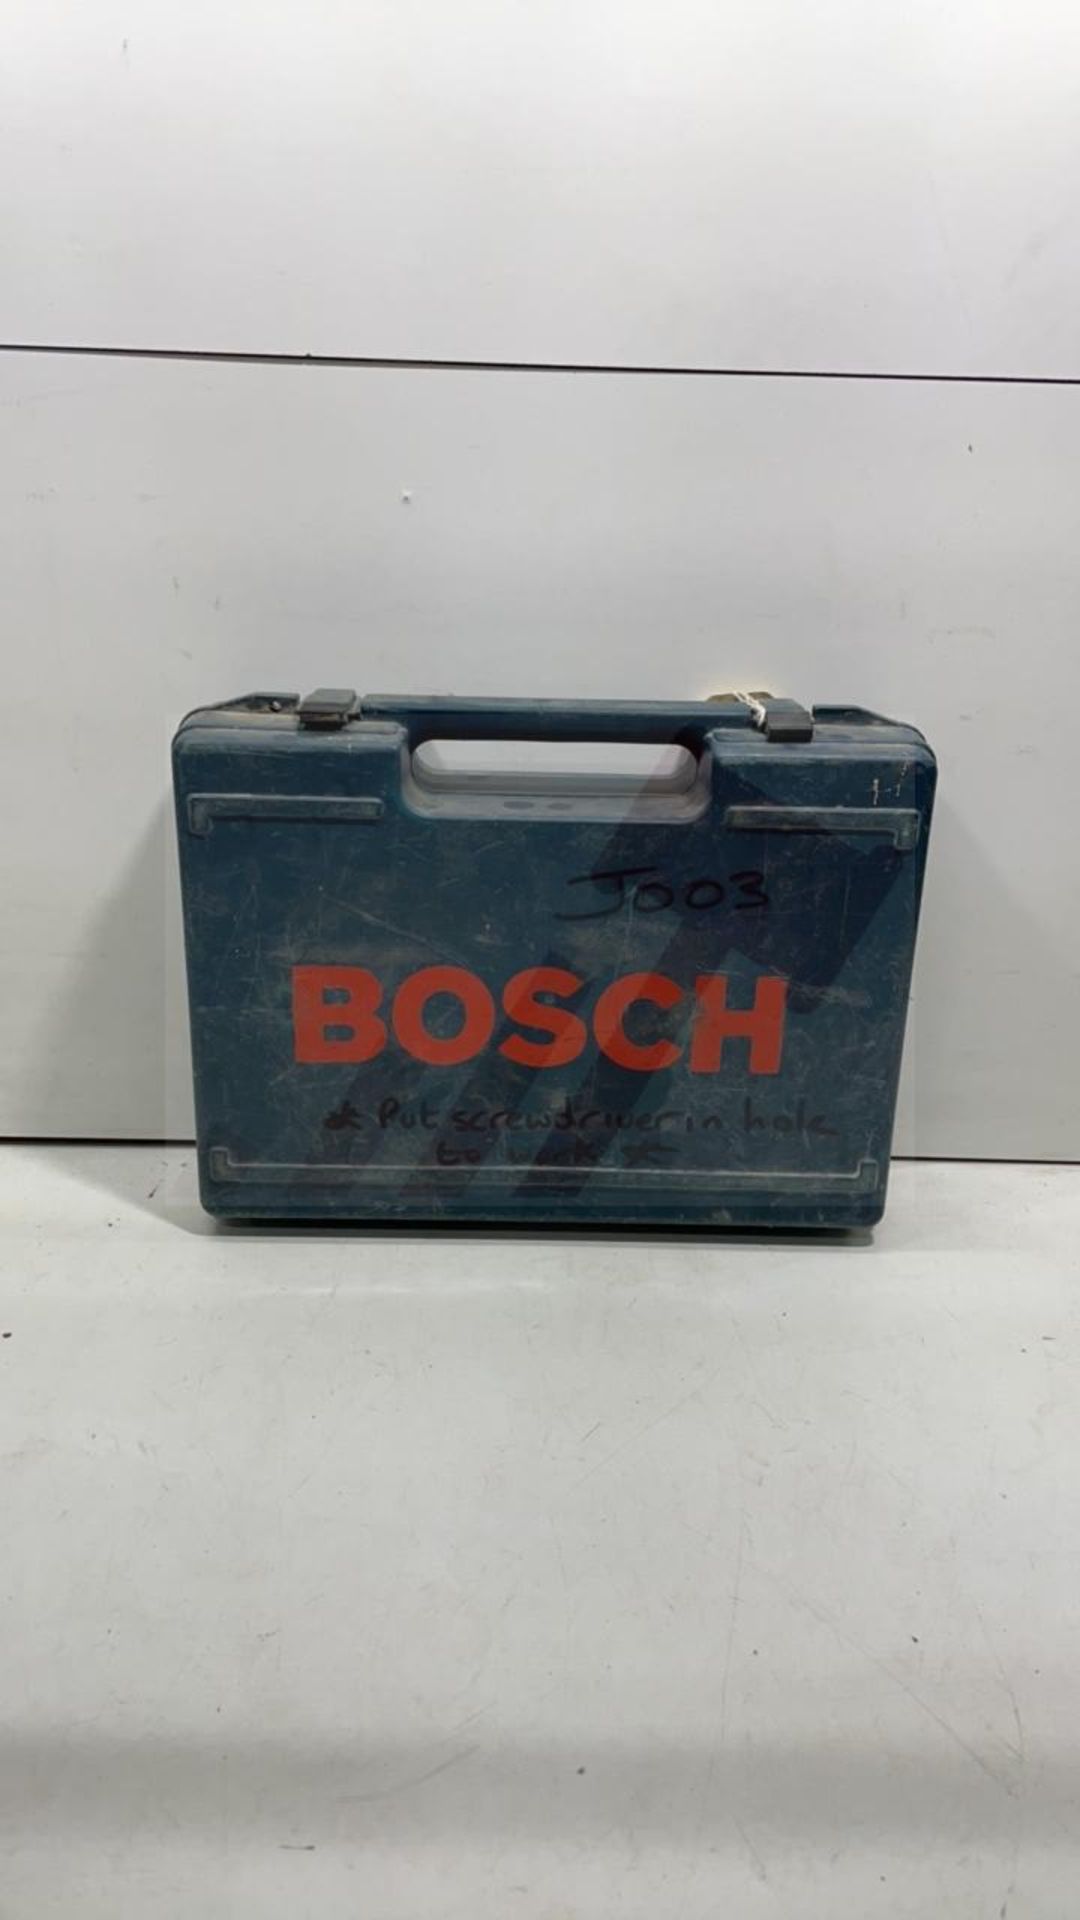 Bosch GST 2000 Jigsaw 580 Watts (110/240 Volt) - Image 5 of 5